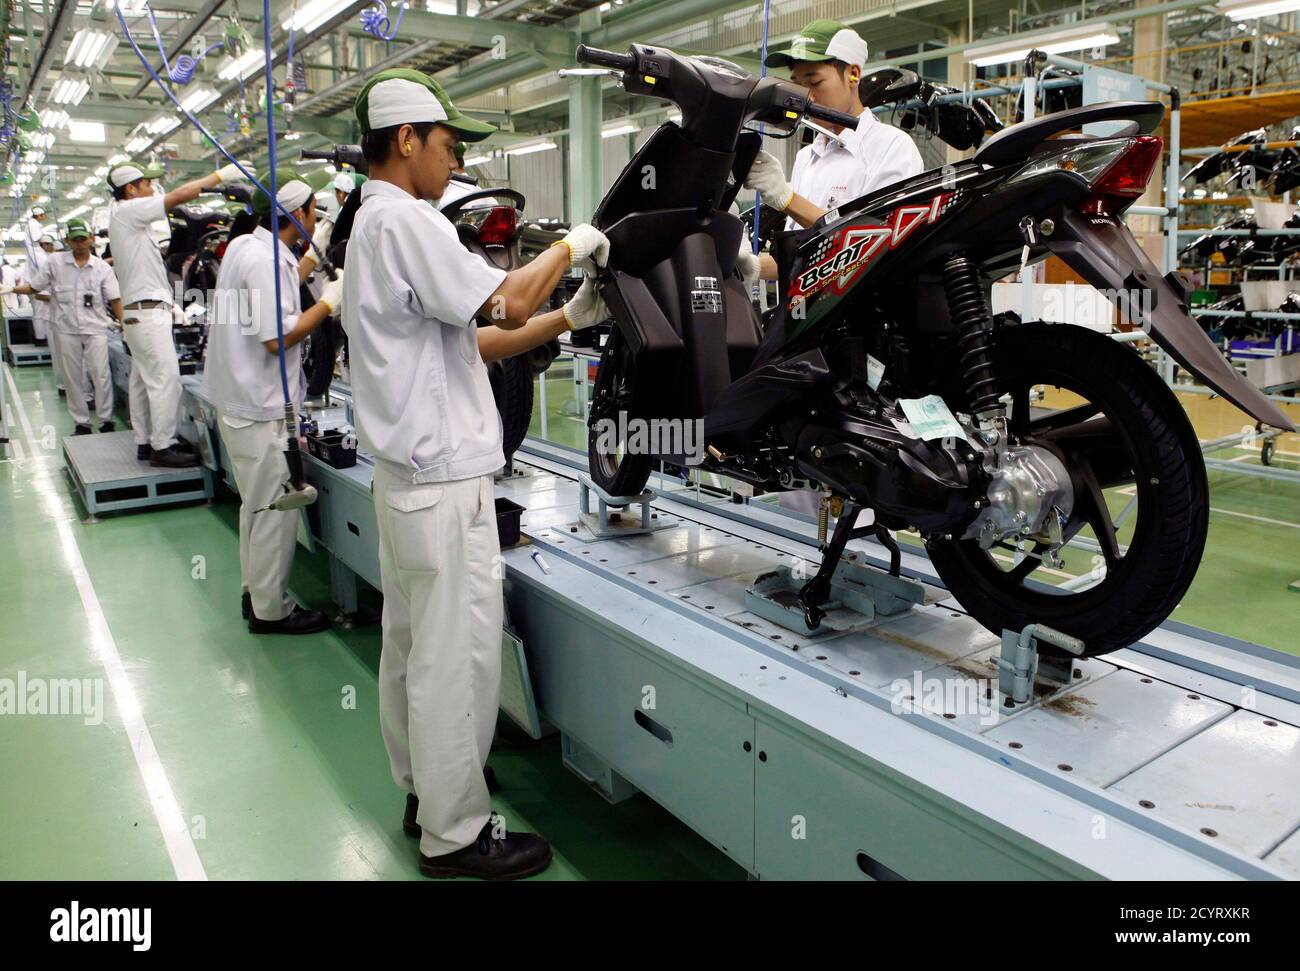 Les travailleurs assemblent des motos à l'usine de moto Honda PT Astra, une  unité d'Astra International, à Cikarang, en périphérie de Jakarta le 17  septembre 2011. Honda Motor Co. Vise à étendre